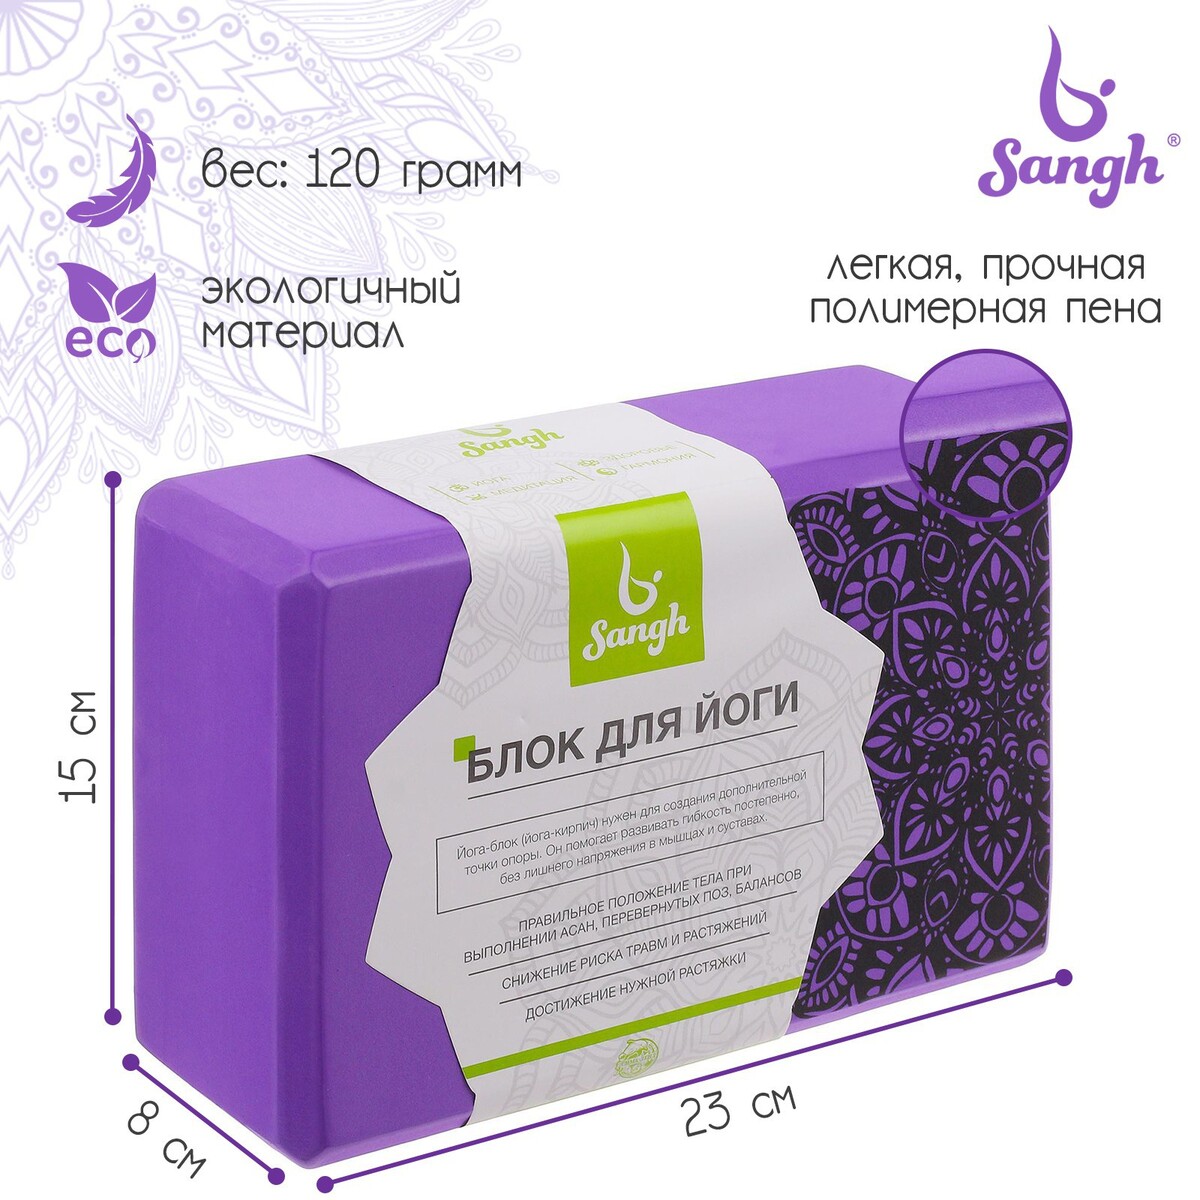 Блок для йоги sangh, 23×15×8, цвет фиолетовый блок для йоги airex eco cork block aa yogaecocb